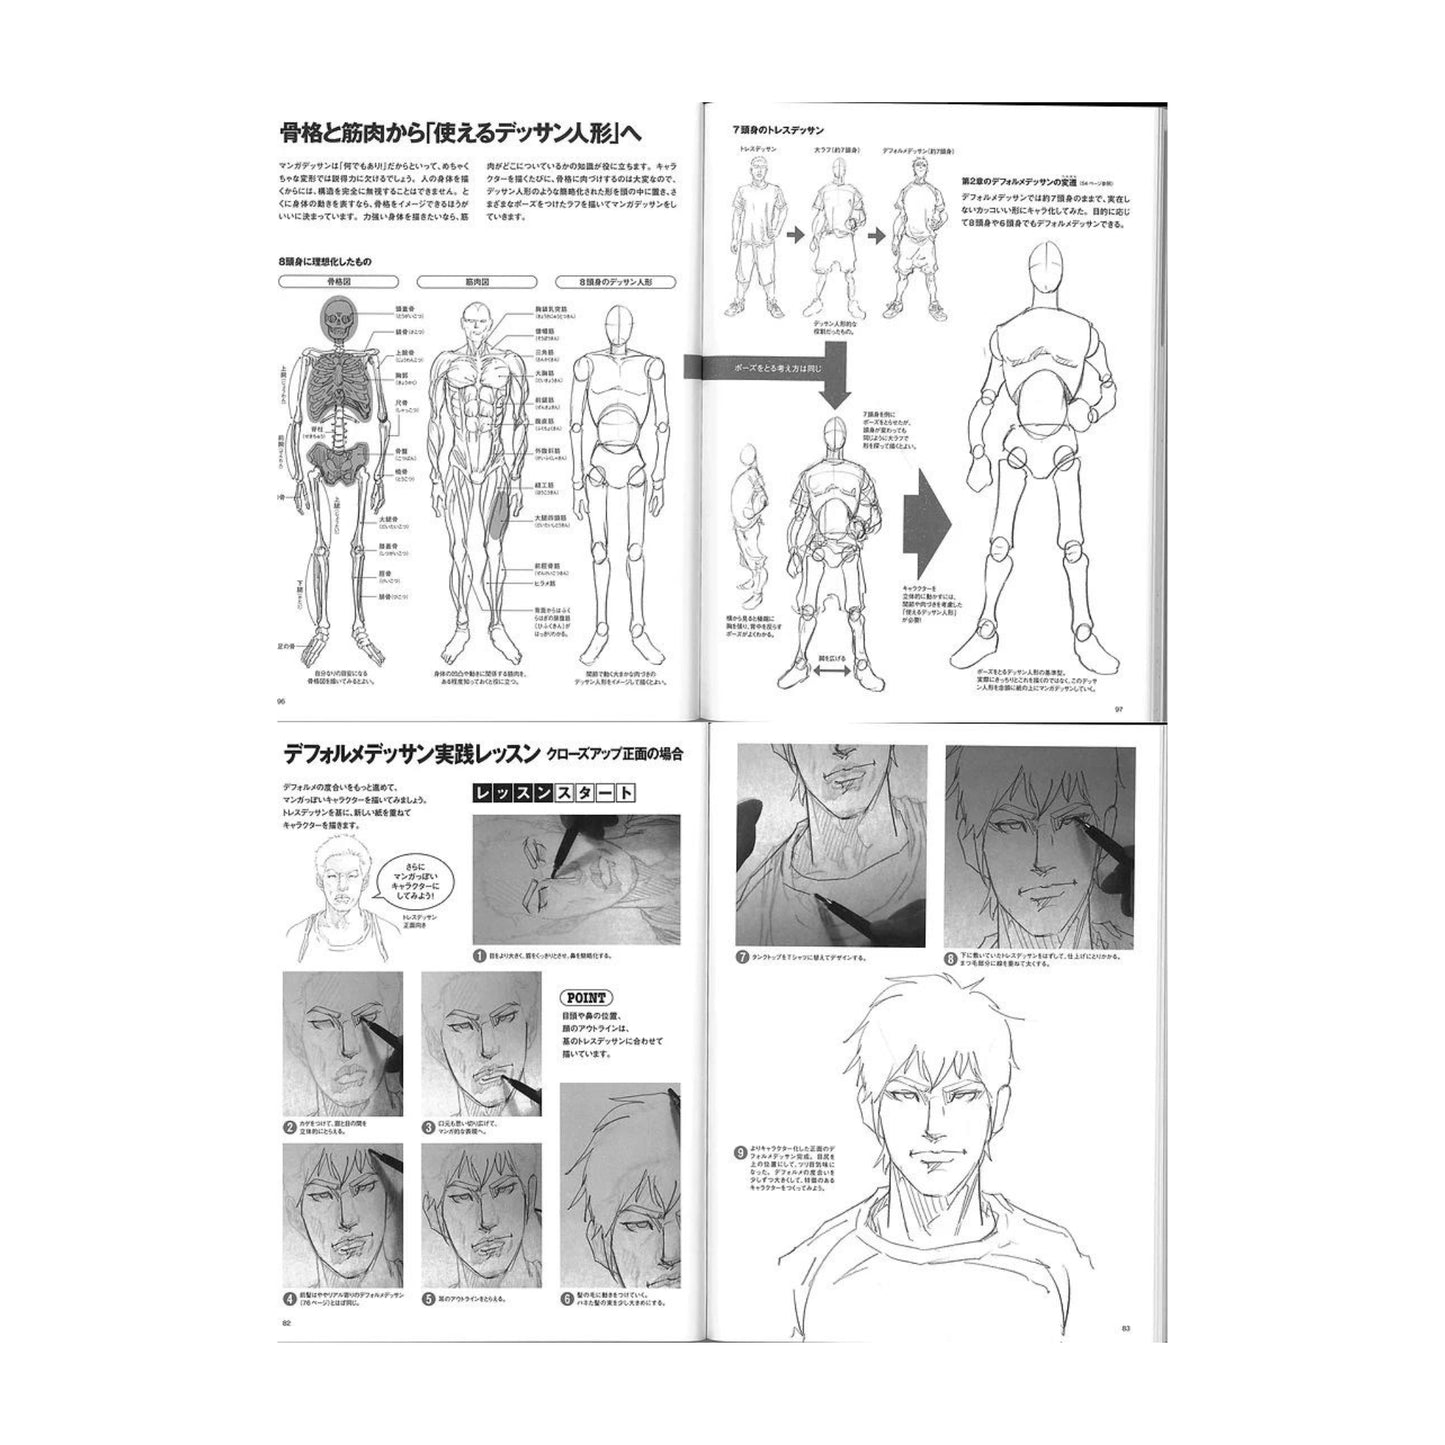 How to draw - jap. Zeichenbuch - Dynamik bei männlichen Charakteren